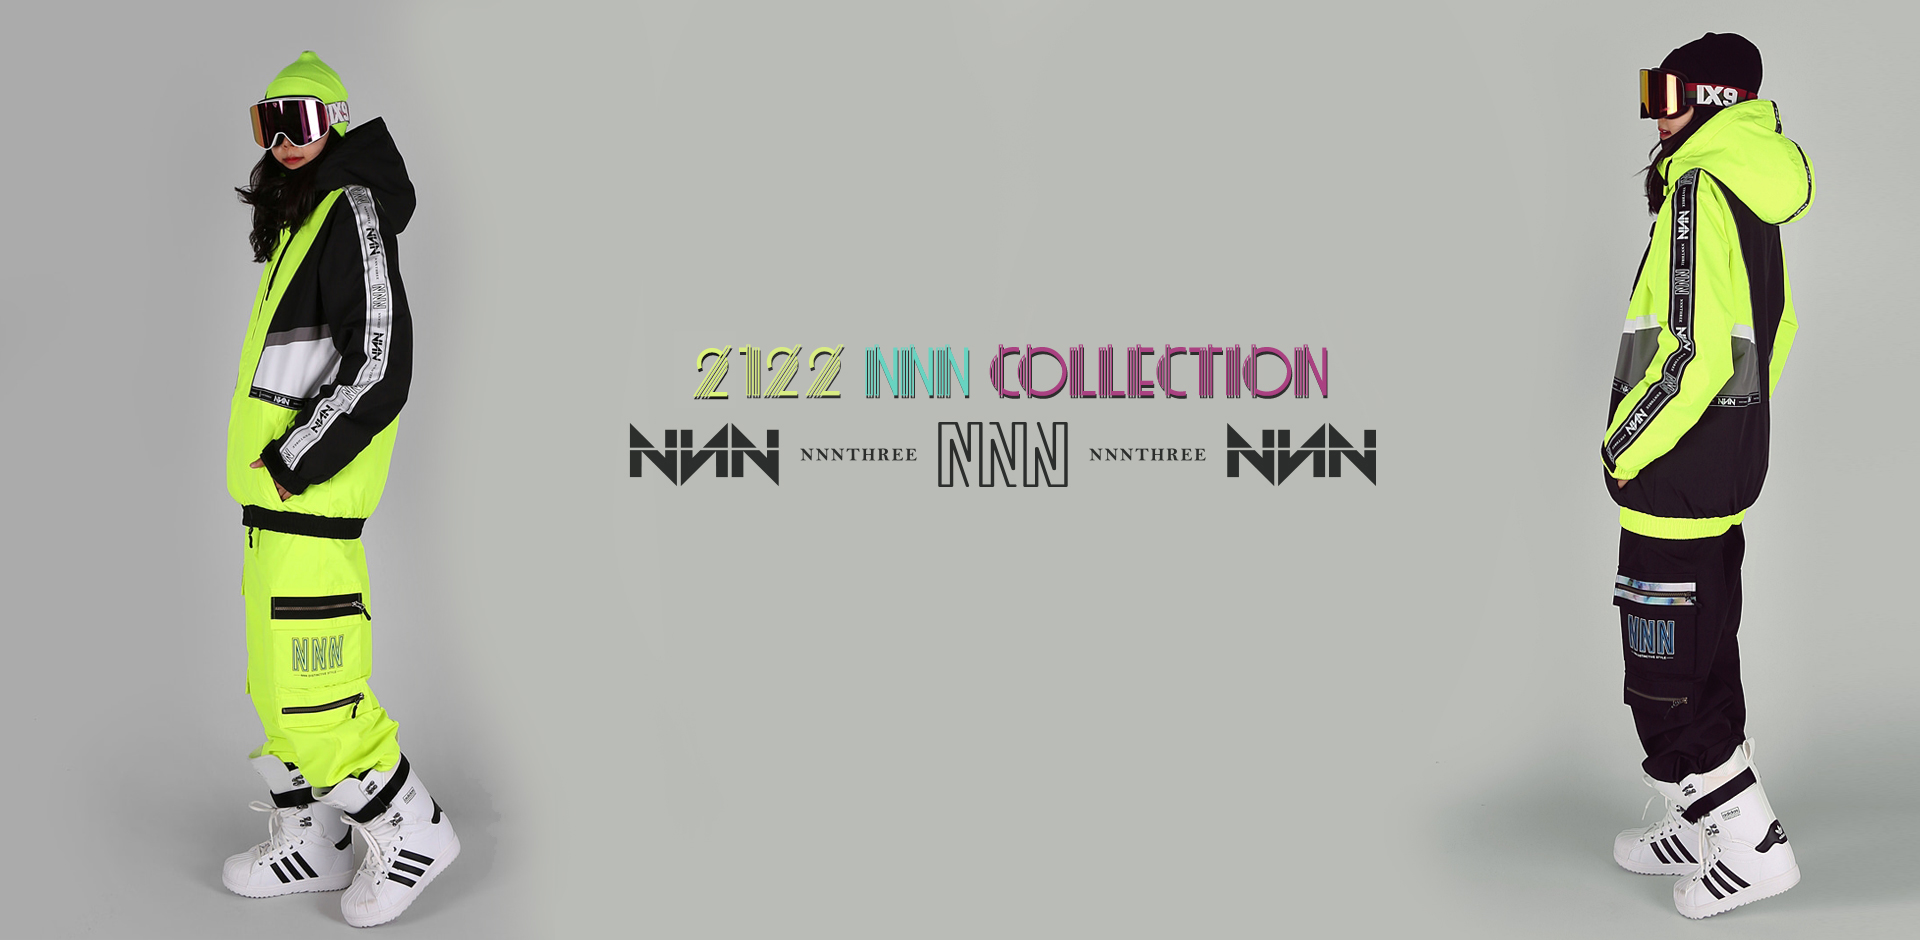 2122- NNN - COLLECTION